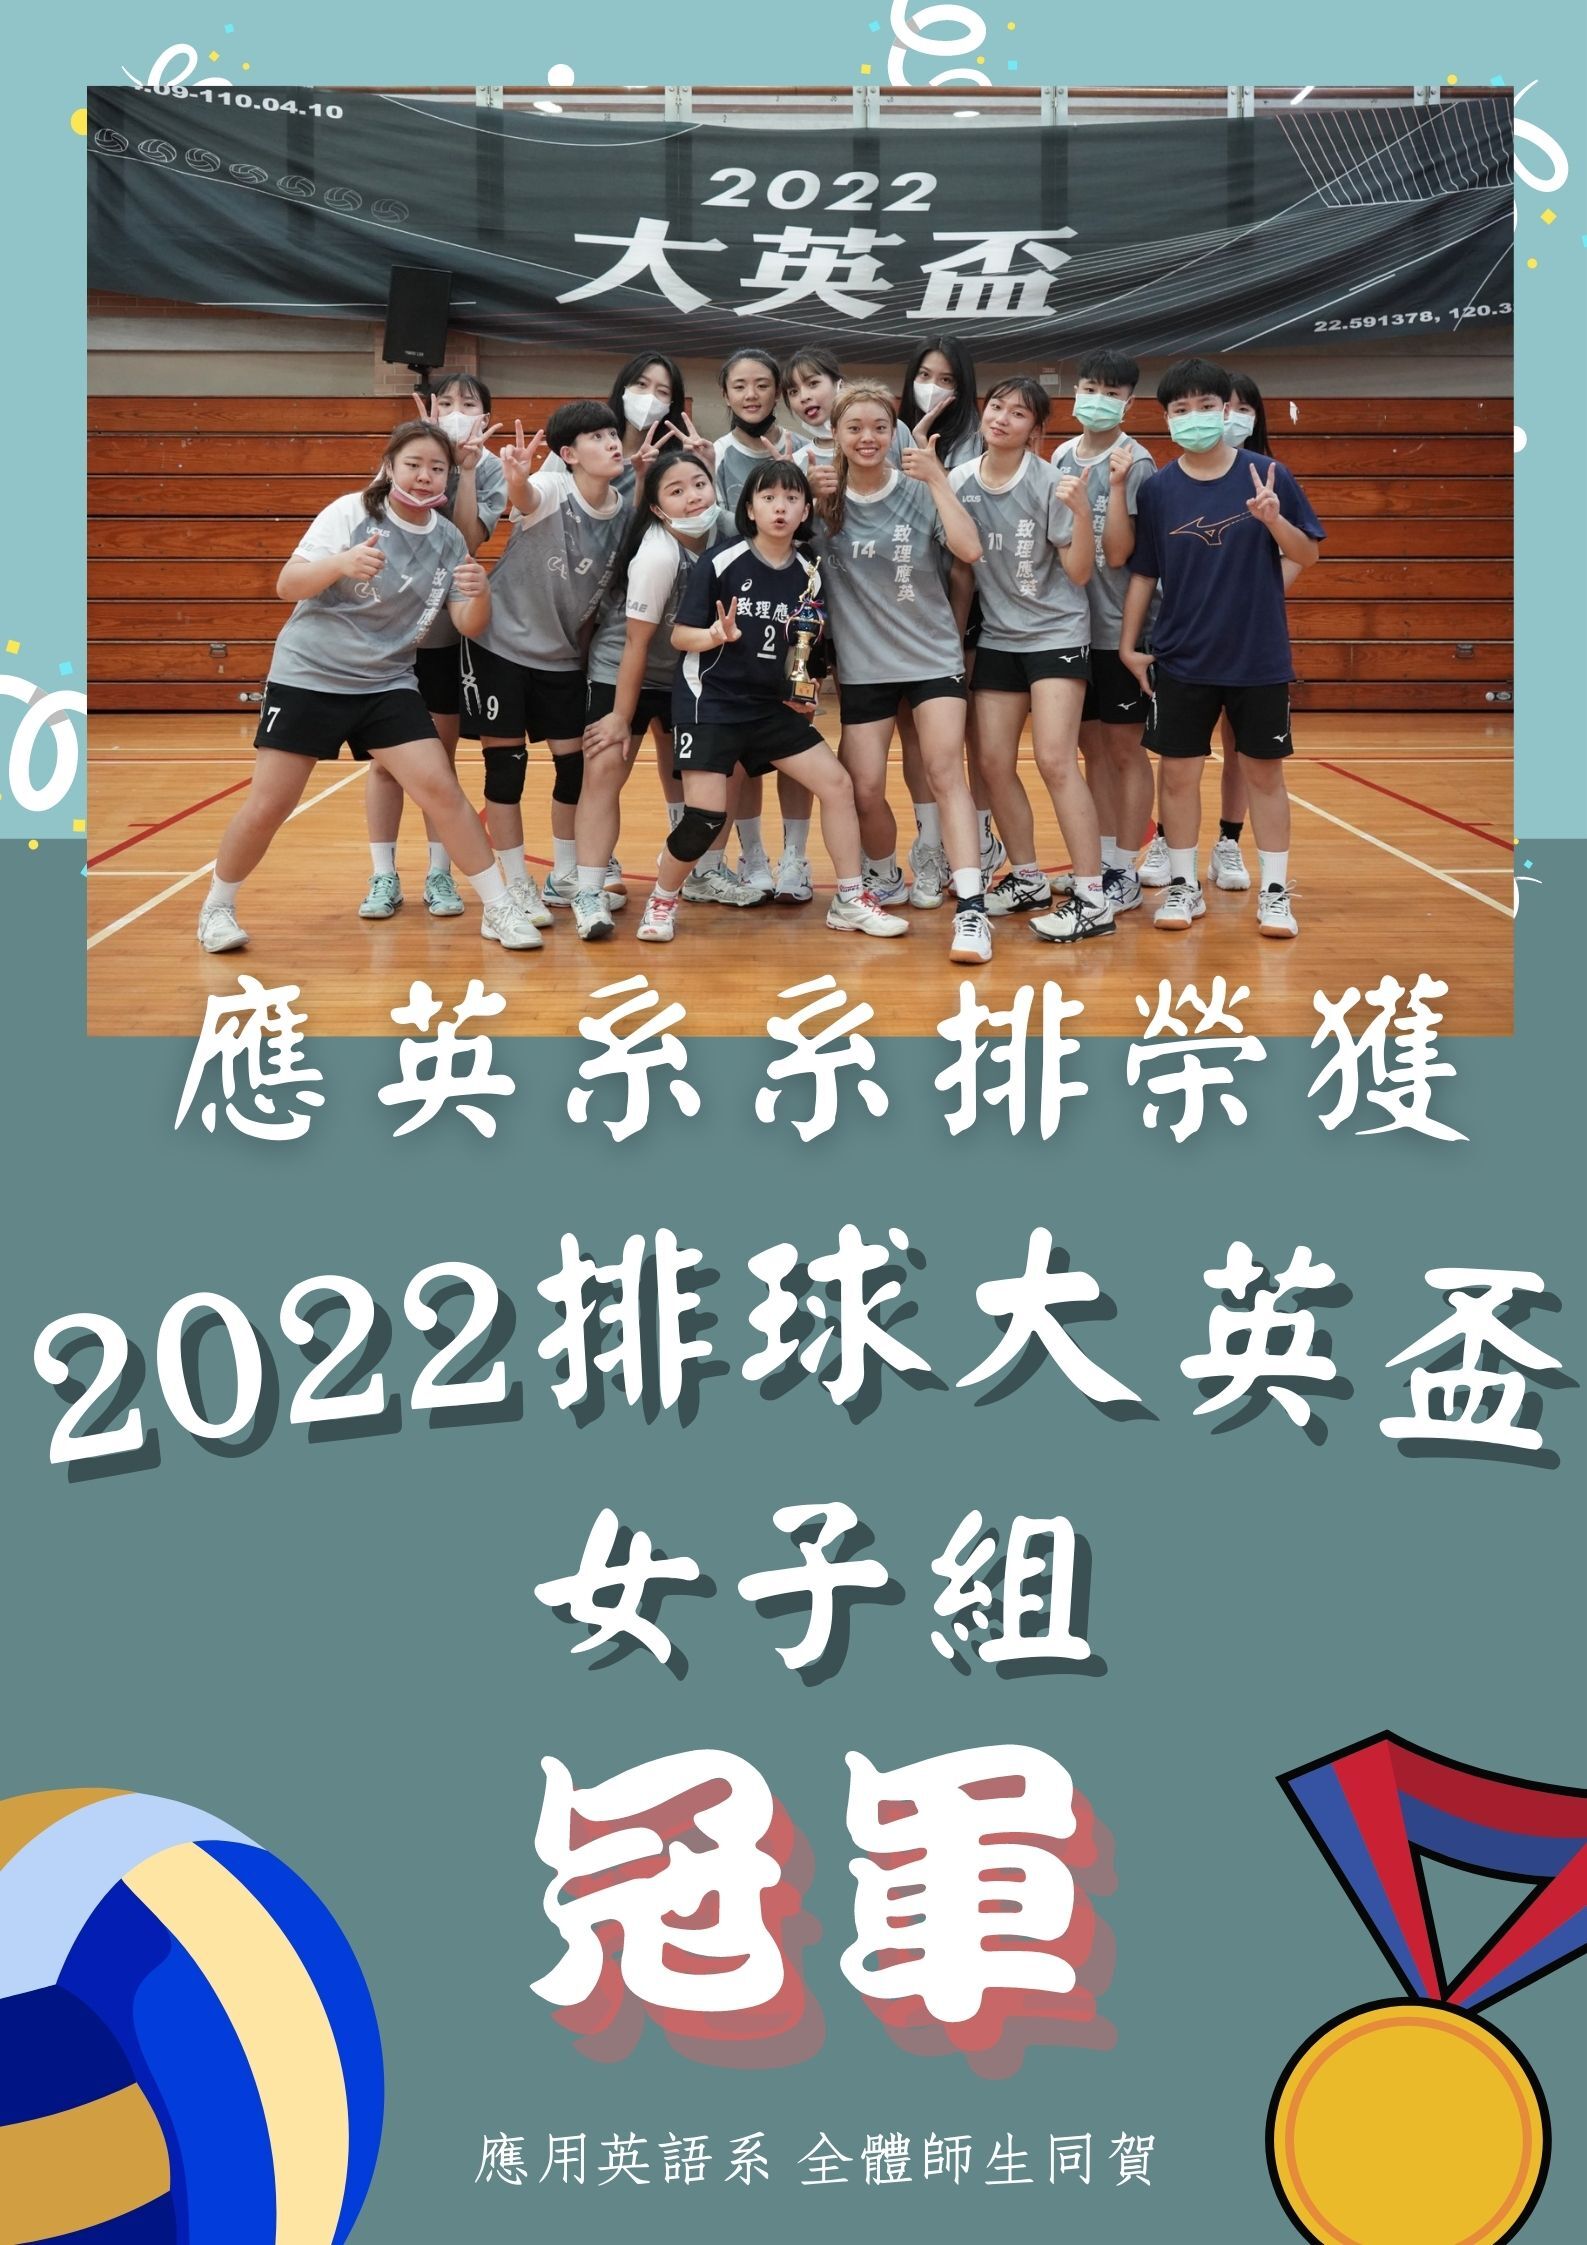 【應用英語系】狂賀~ 應用英語系 榮獲2022 大英盃排球女子組冠軍